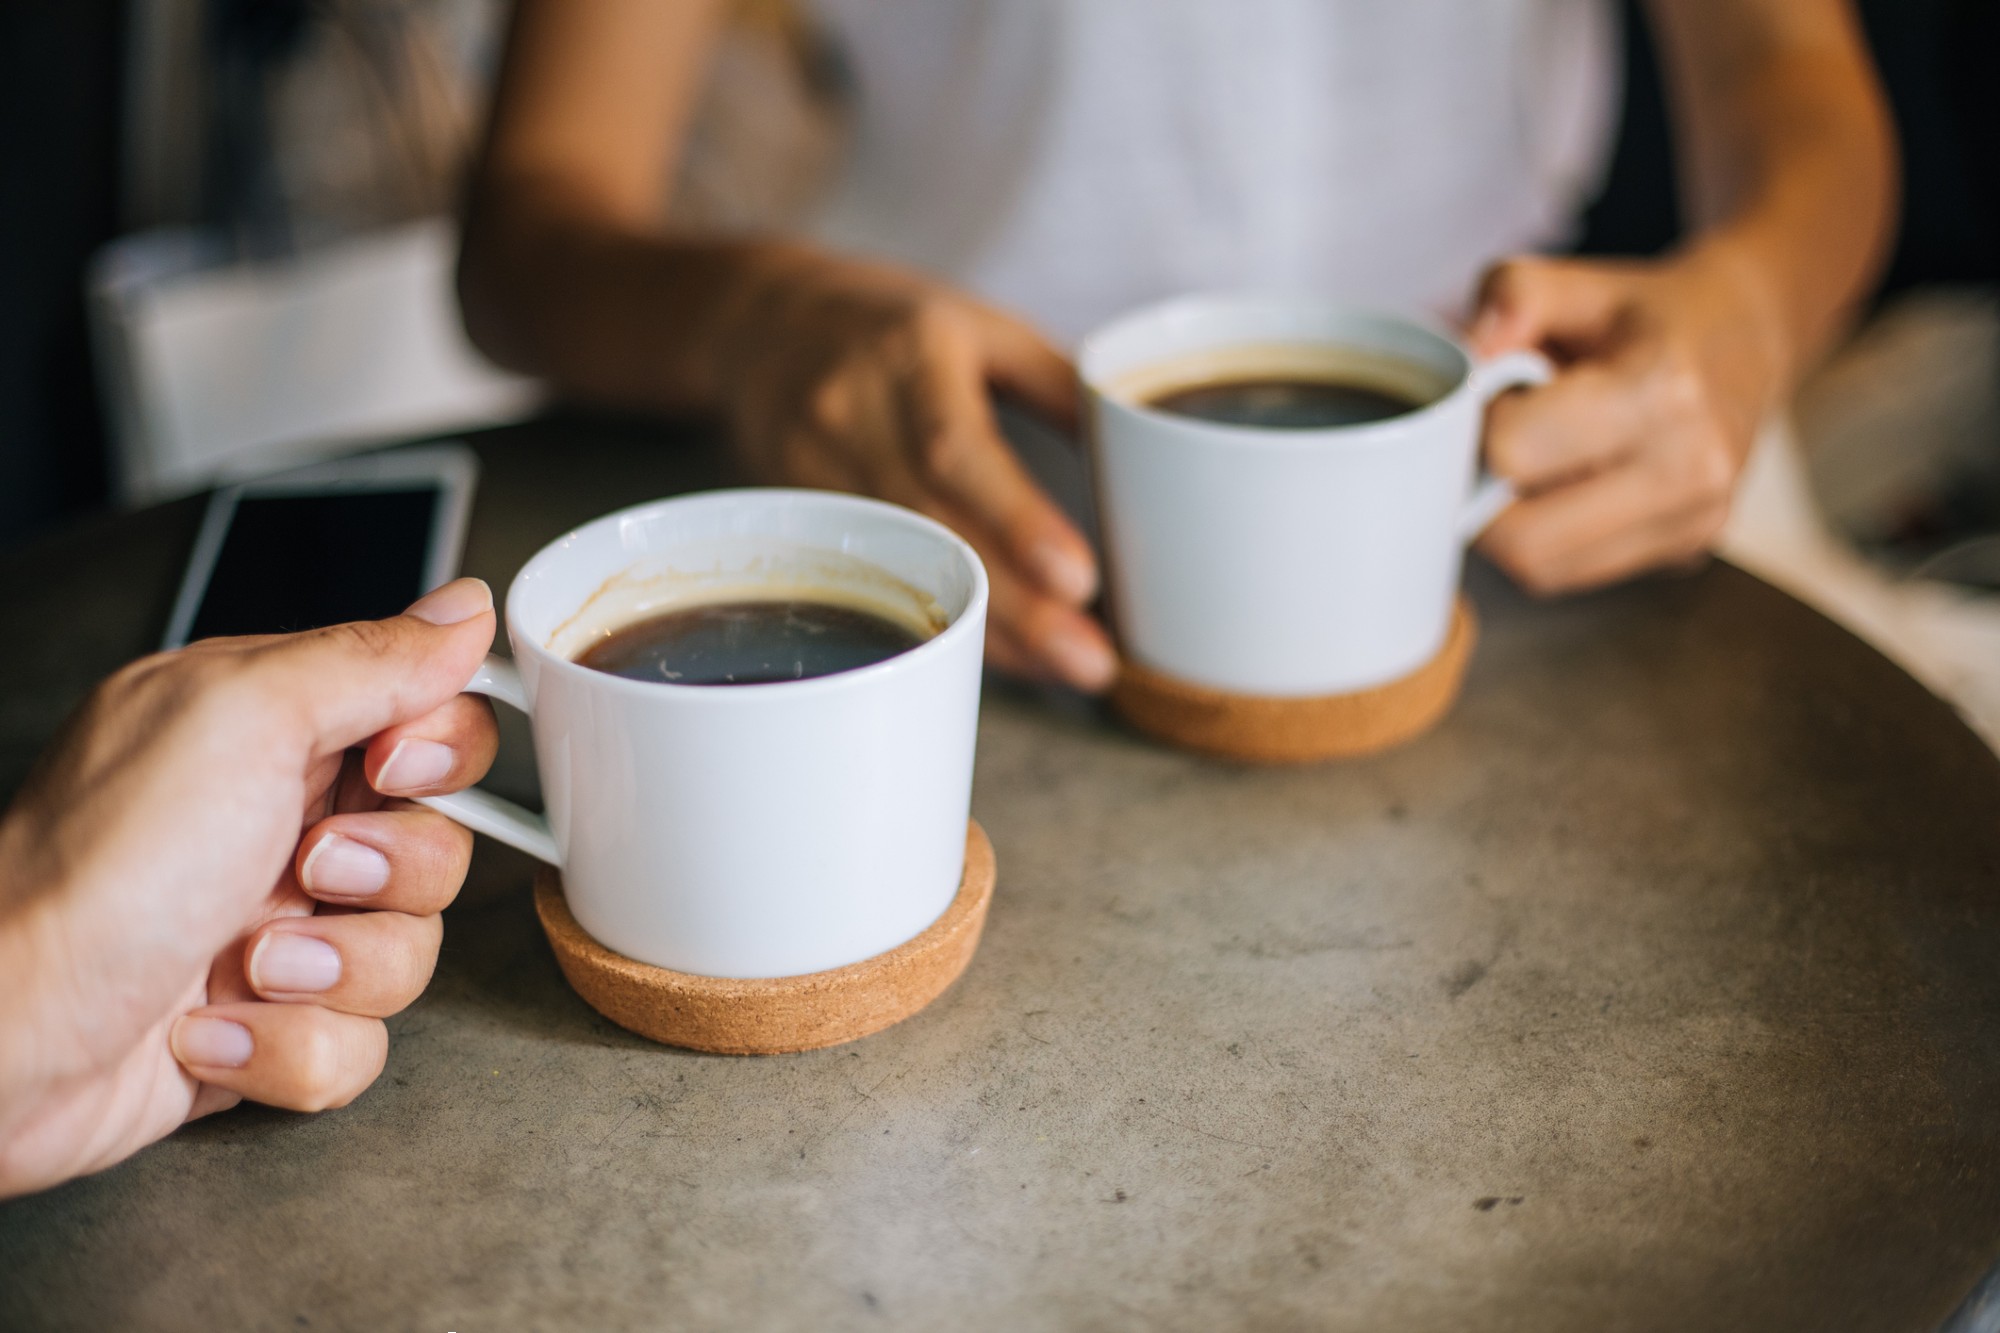 دراسة حديثة تكشف ما يحدث عند شرب كوبين إلى 3 أكواب من القهوة يوميا watanserb.com